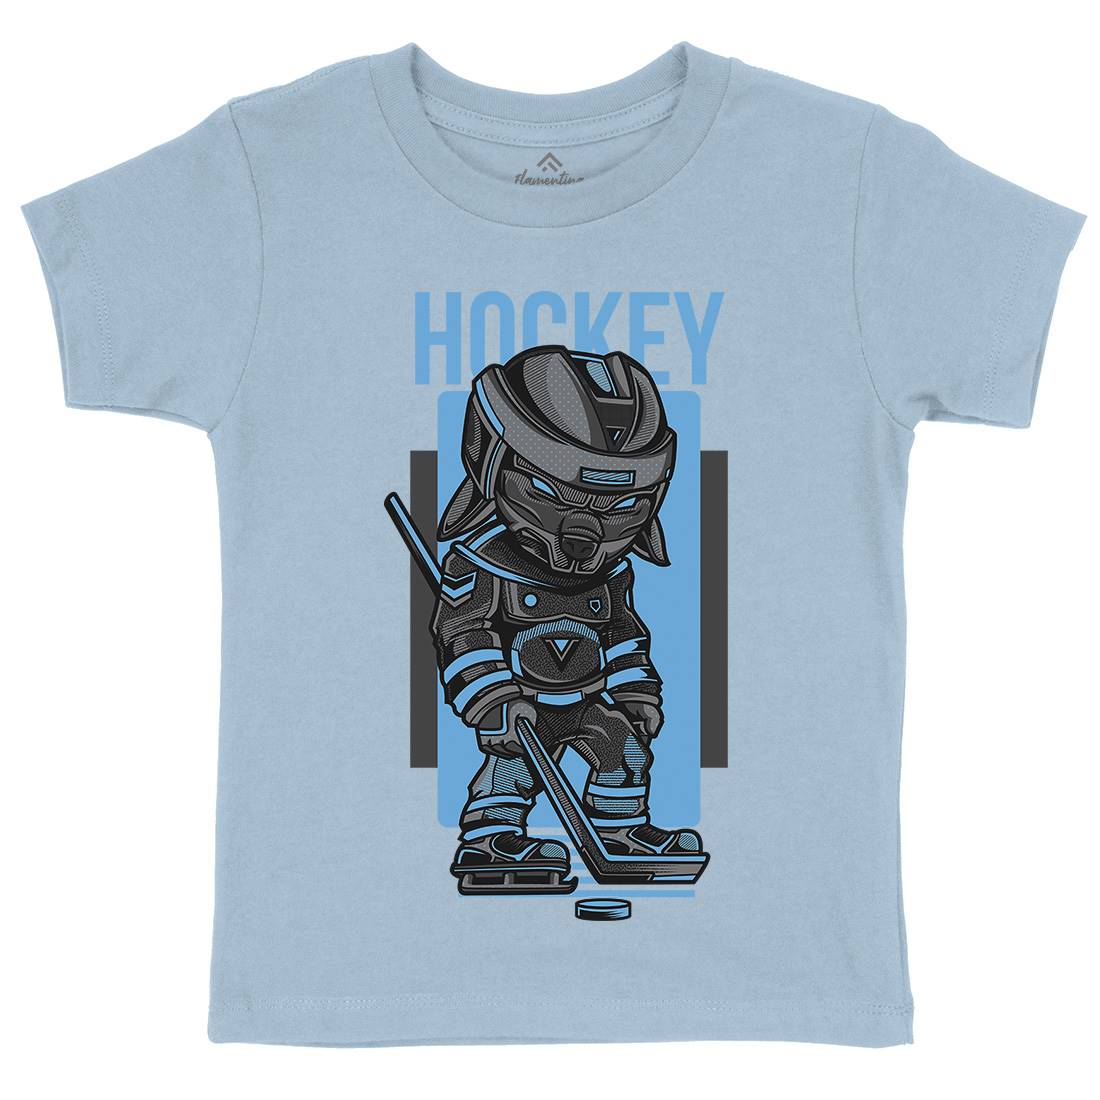 Hockey Kids Crew Neck T-Shirt Sport D614